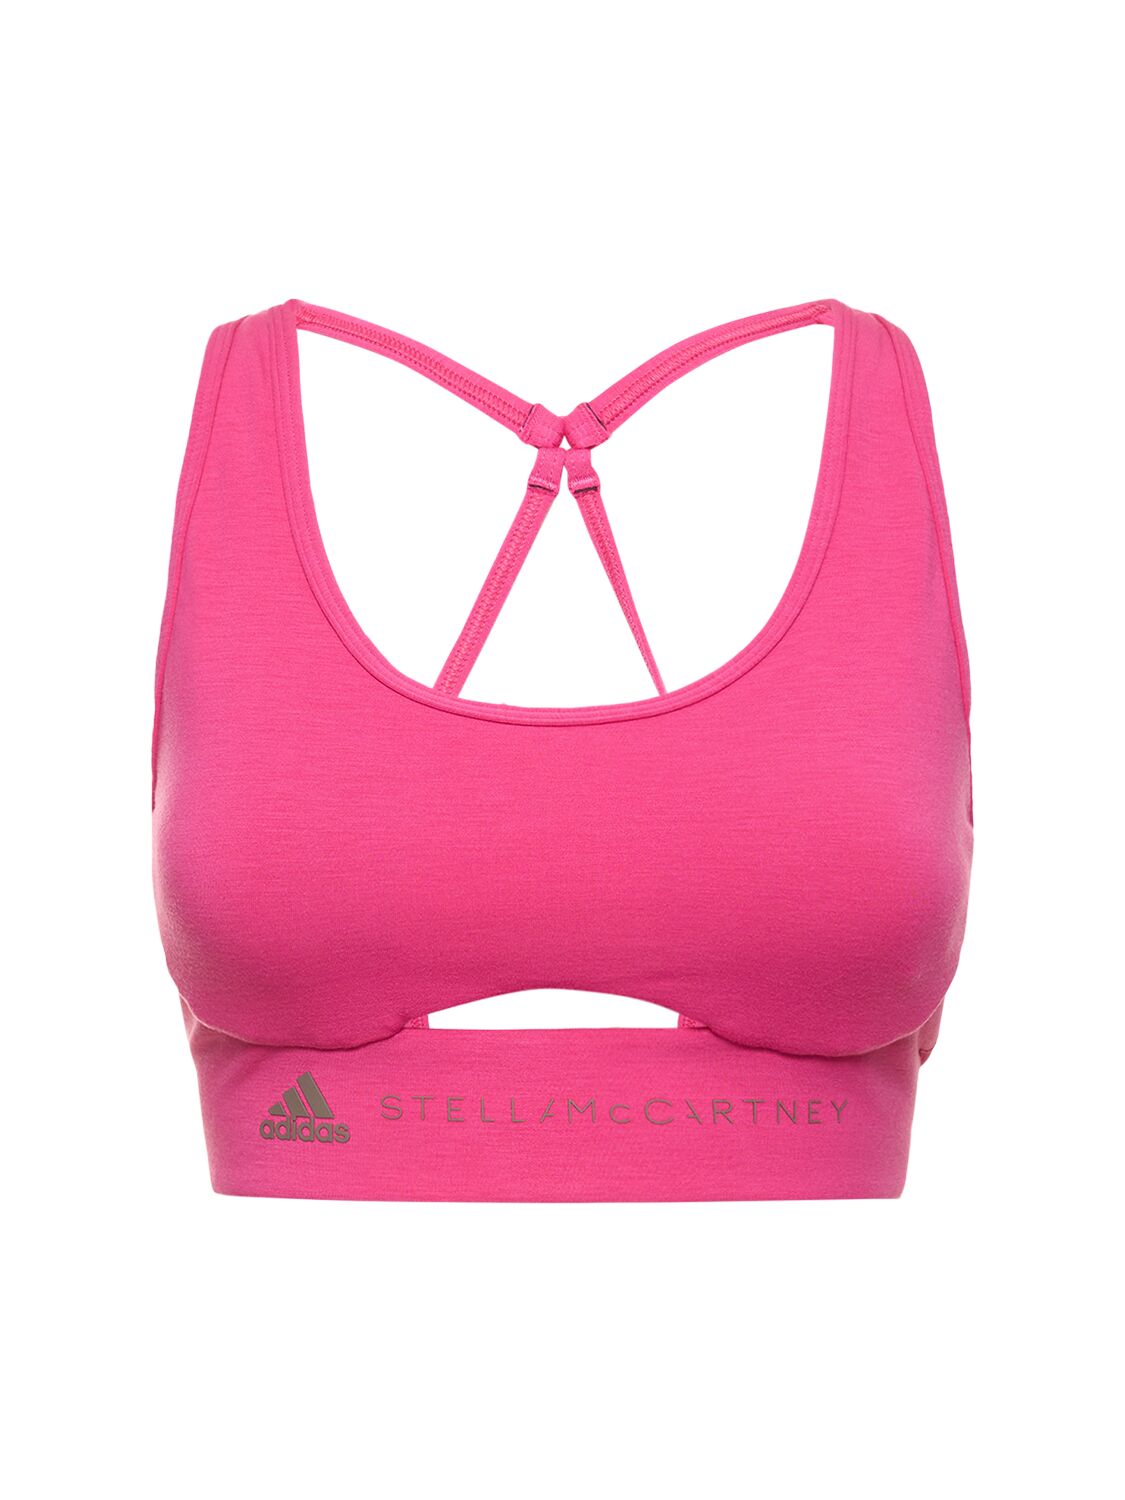 Adidas By Stella Mccartney Yoga Bra Top In Pink